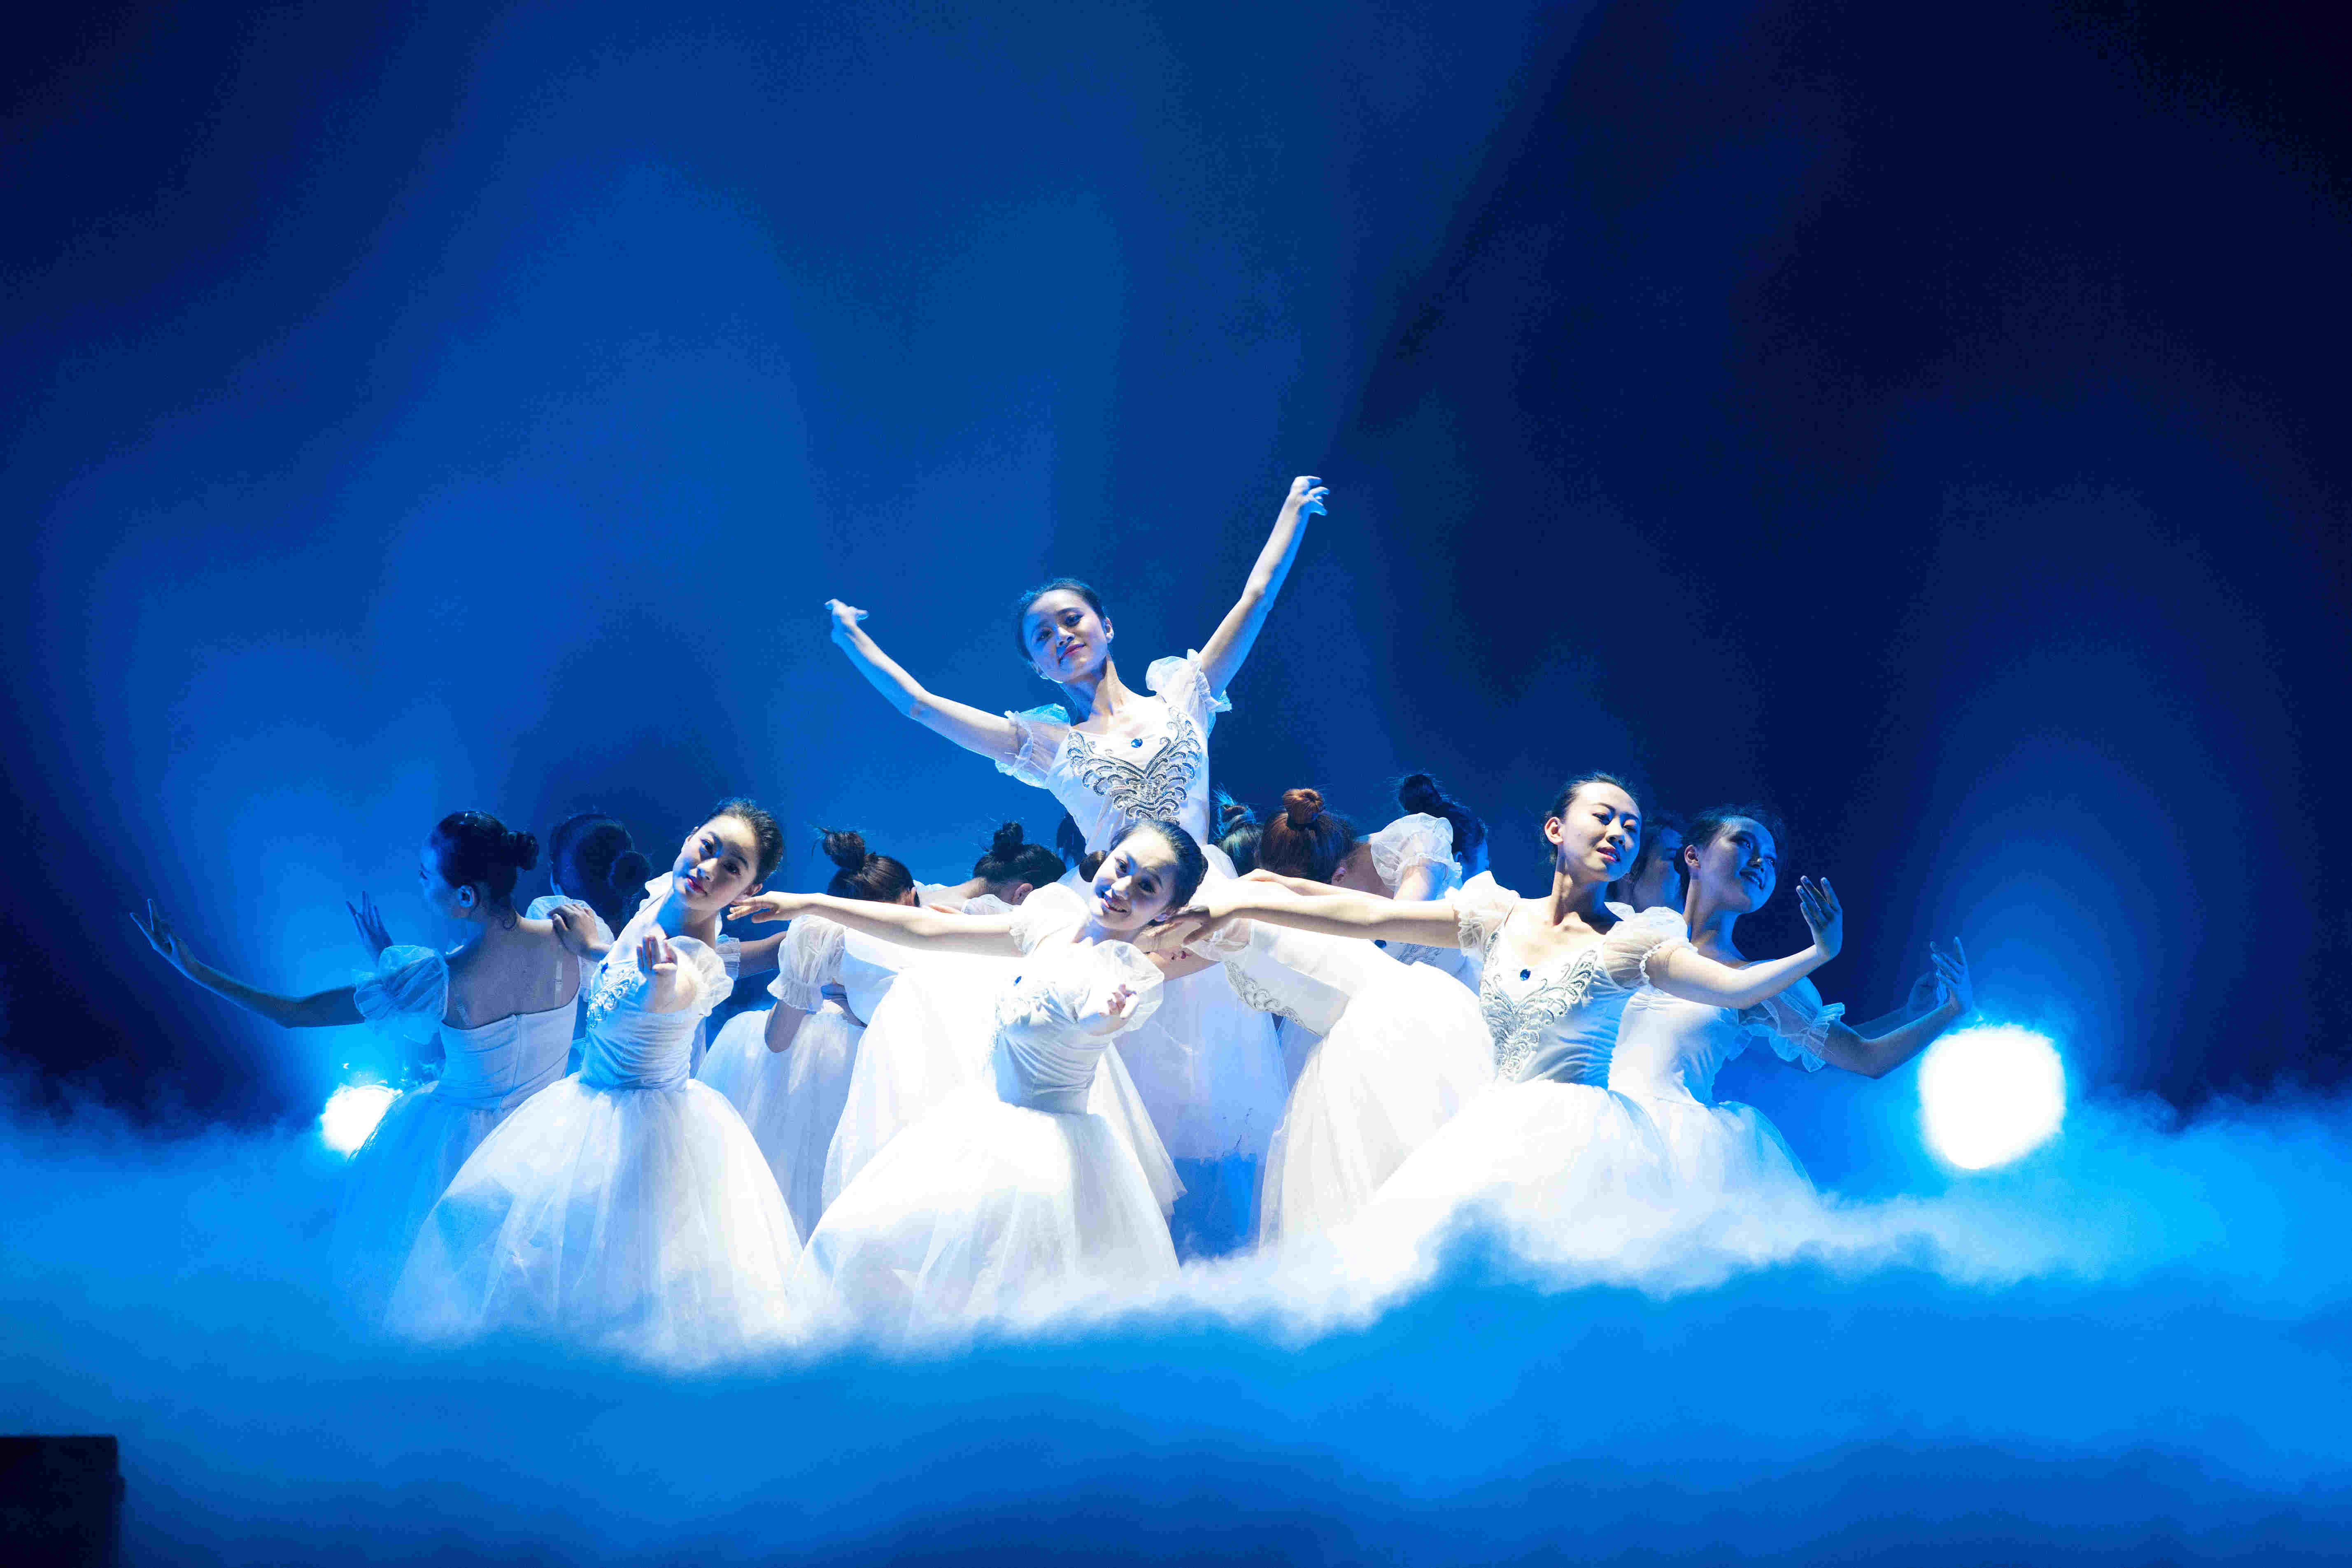 一支唯美的中国意象舞《雨打芭蕉》拉开整场演出的帷幕,舞团姑娘们以